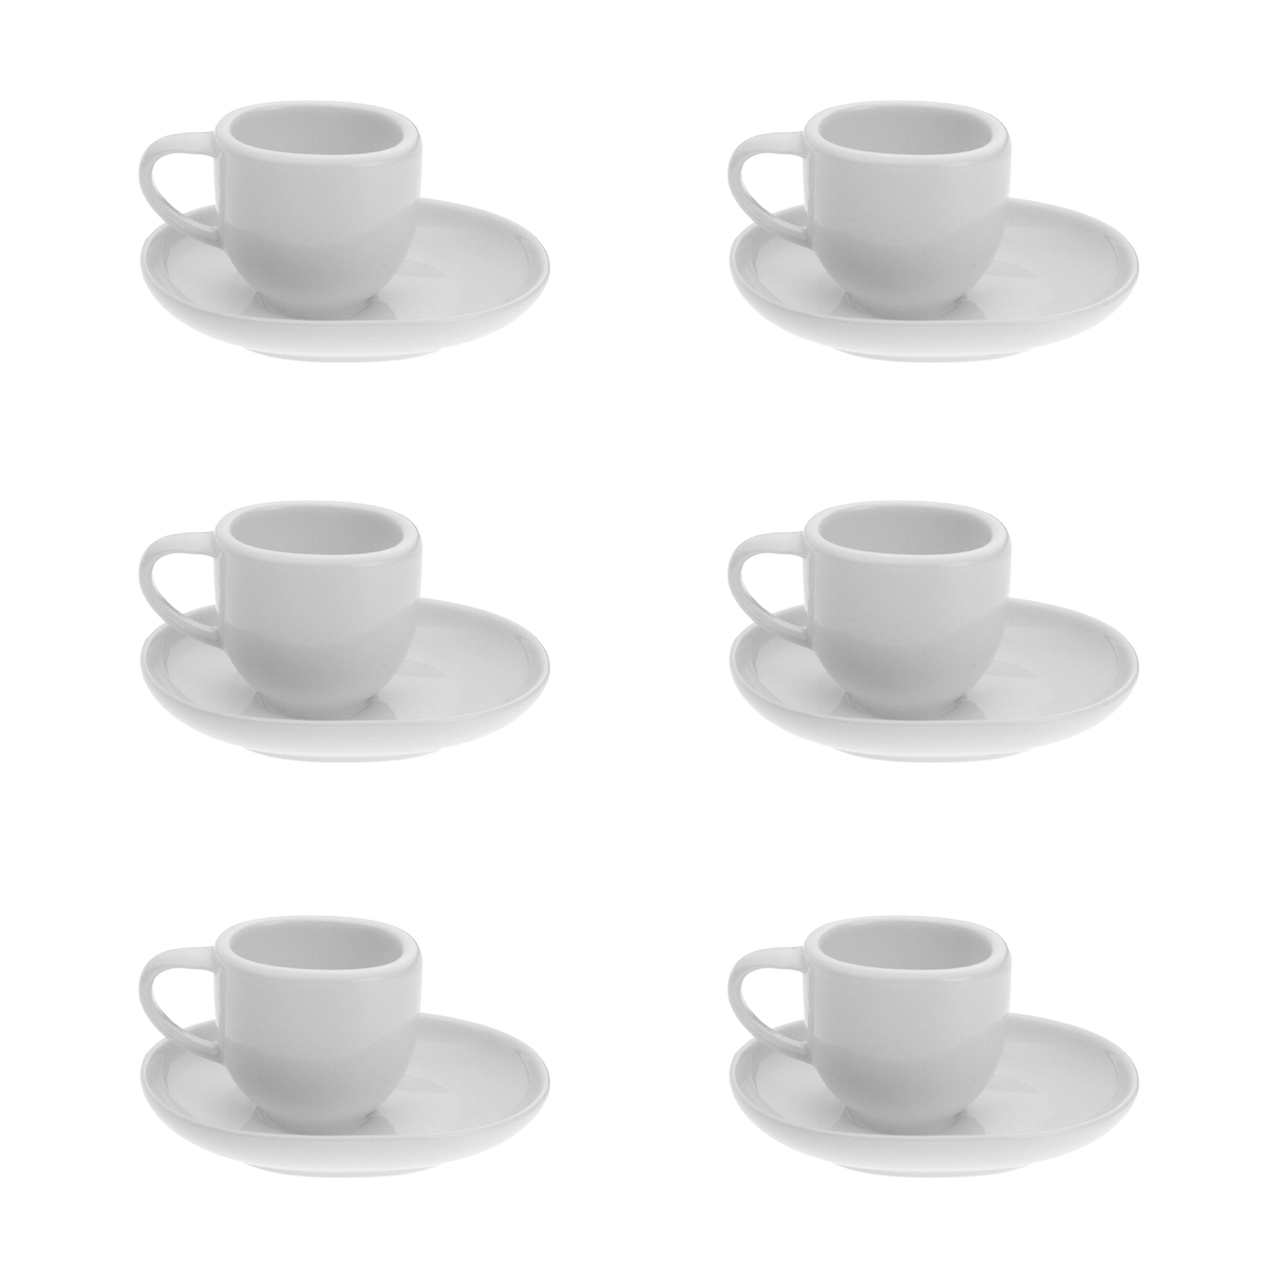 سرویس قهوه خوری 12 پارچه وان کافی مدل بارکا وایت کد JX002-40-W